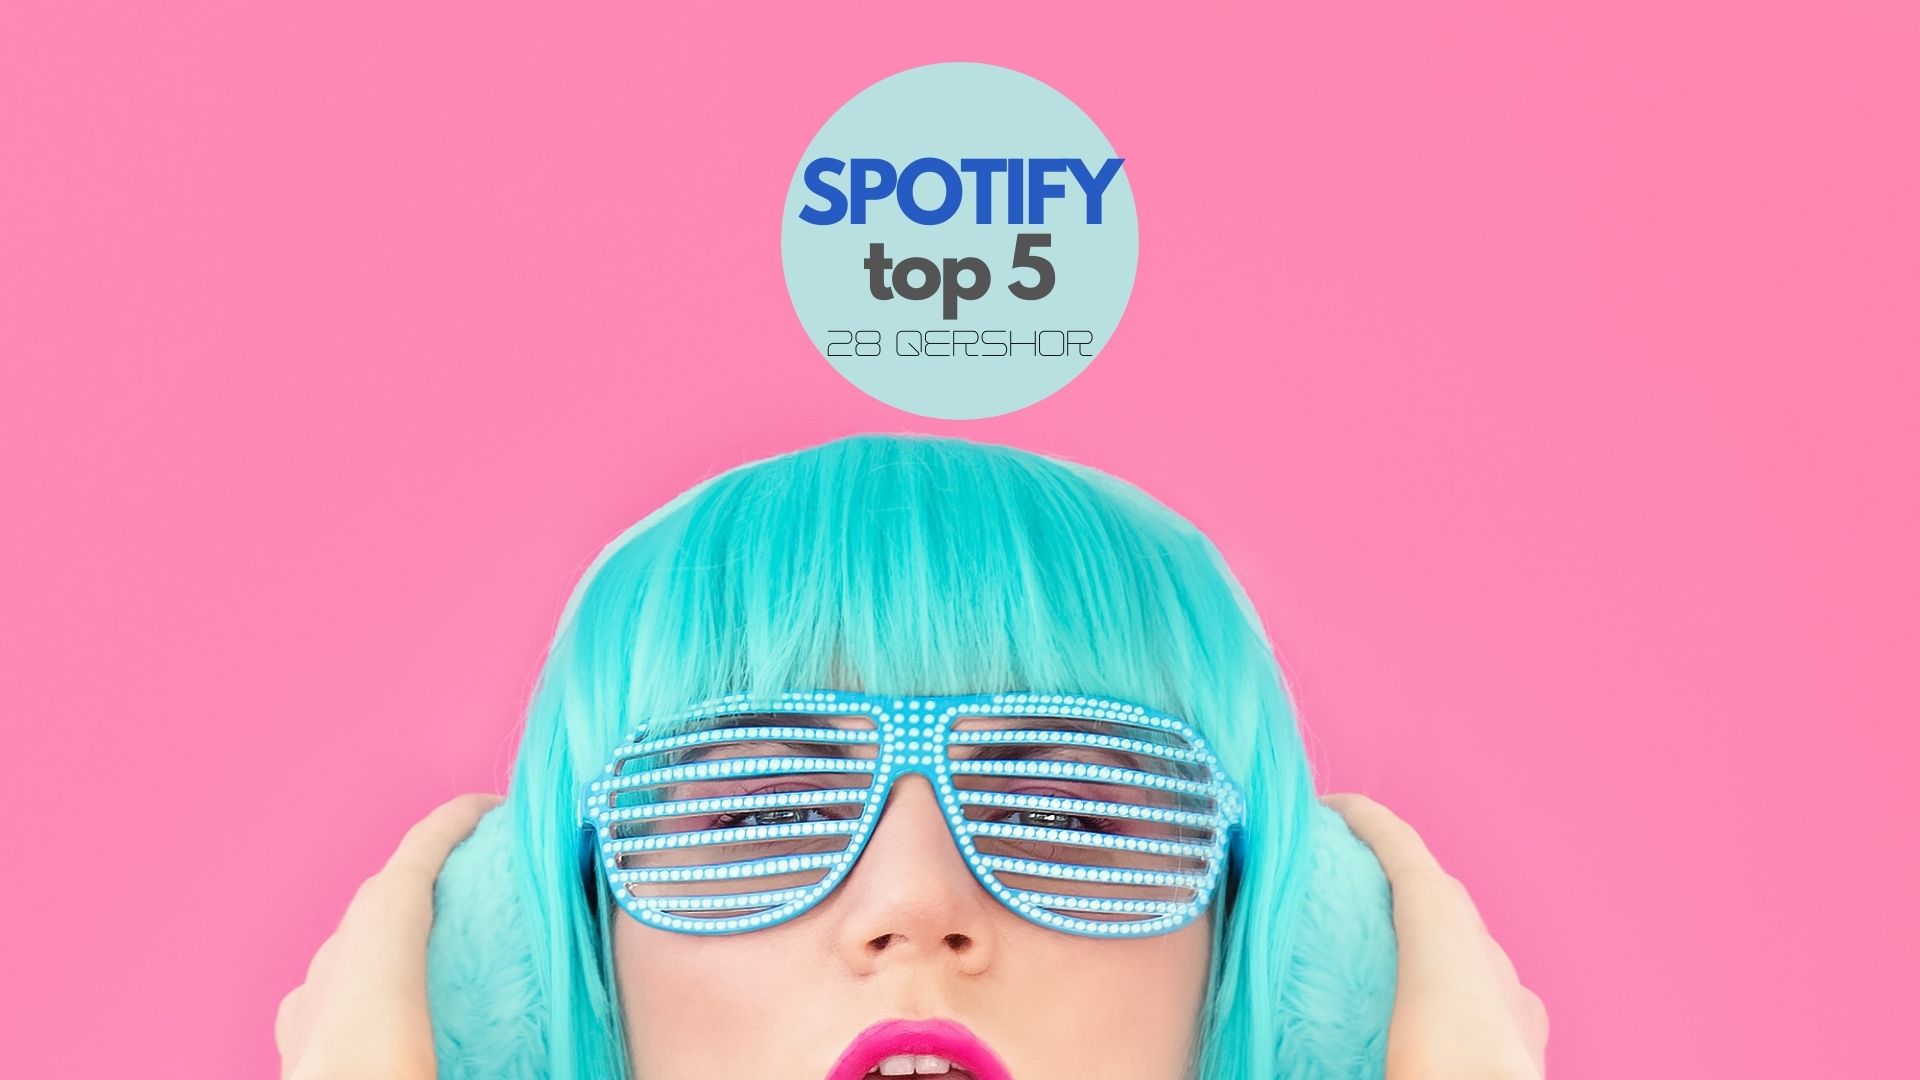 Spotify këtë javë kryesohet nga këto këngë që “mbretërojnë” në top 5!